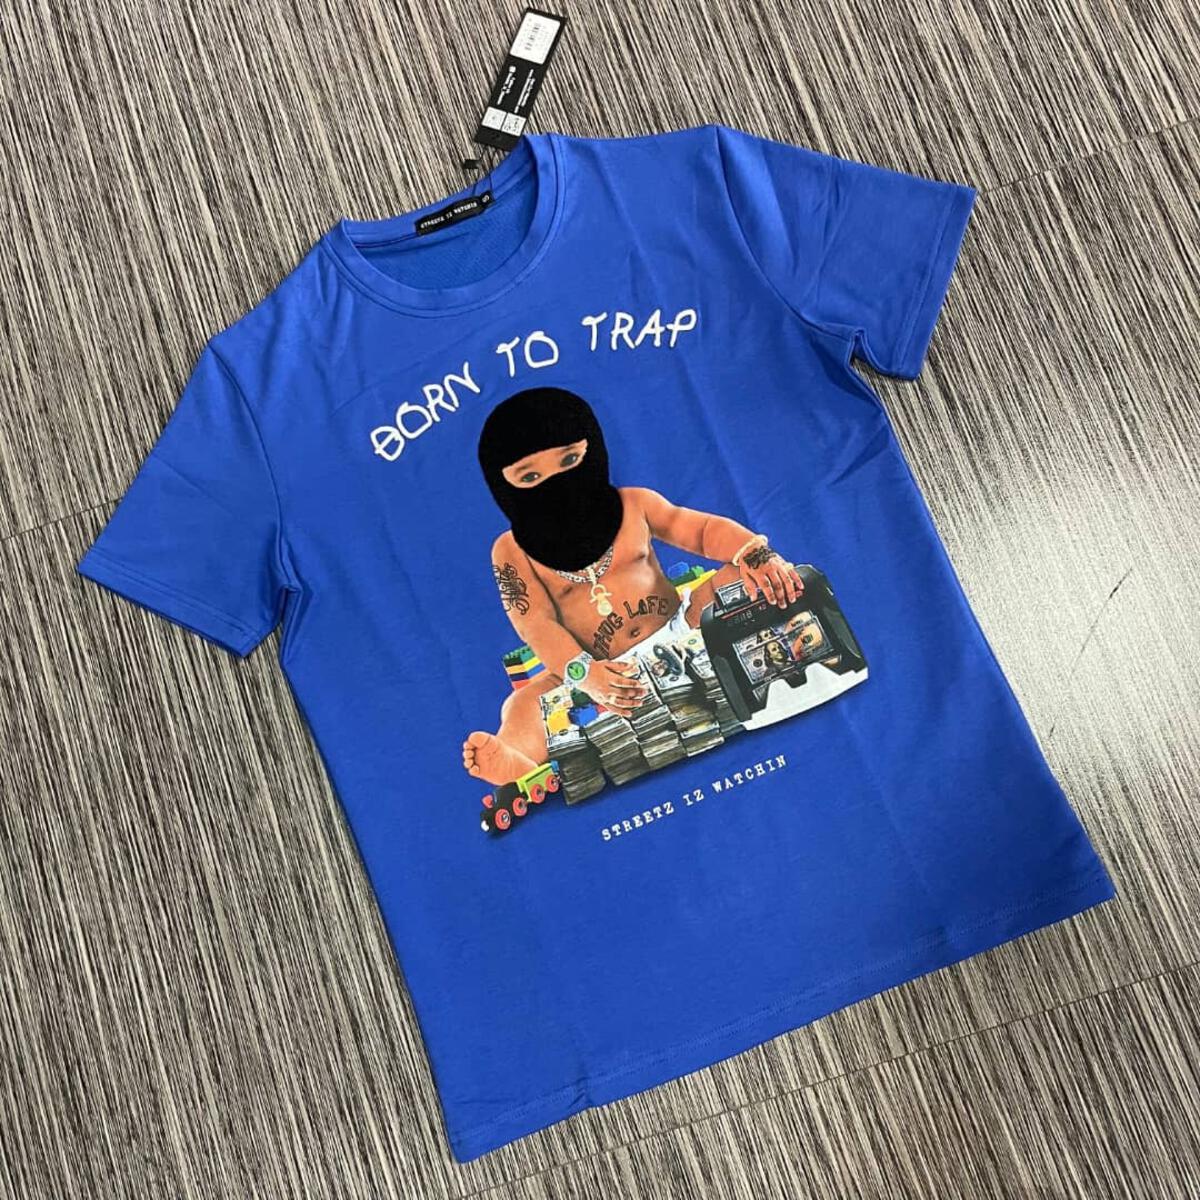 Streetz Iz Watchin - Trap VIP Baby 2 T-Shirt Shop Wear –